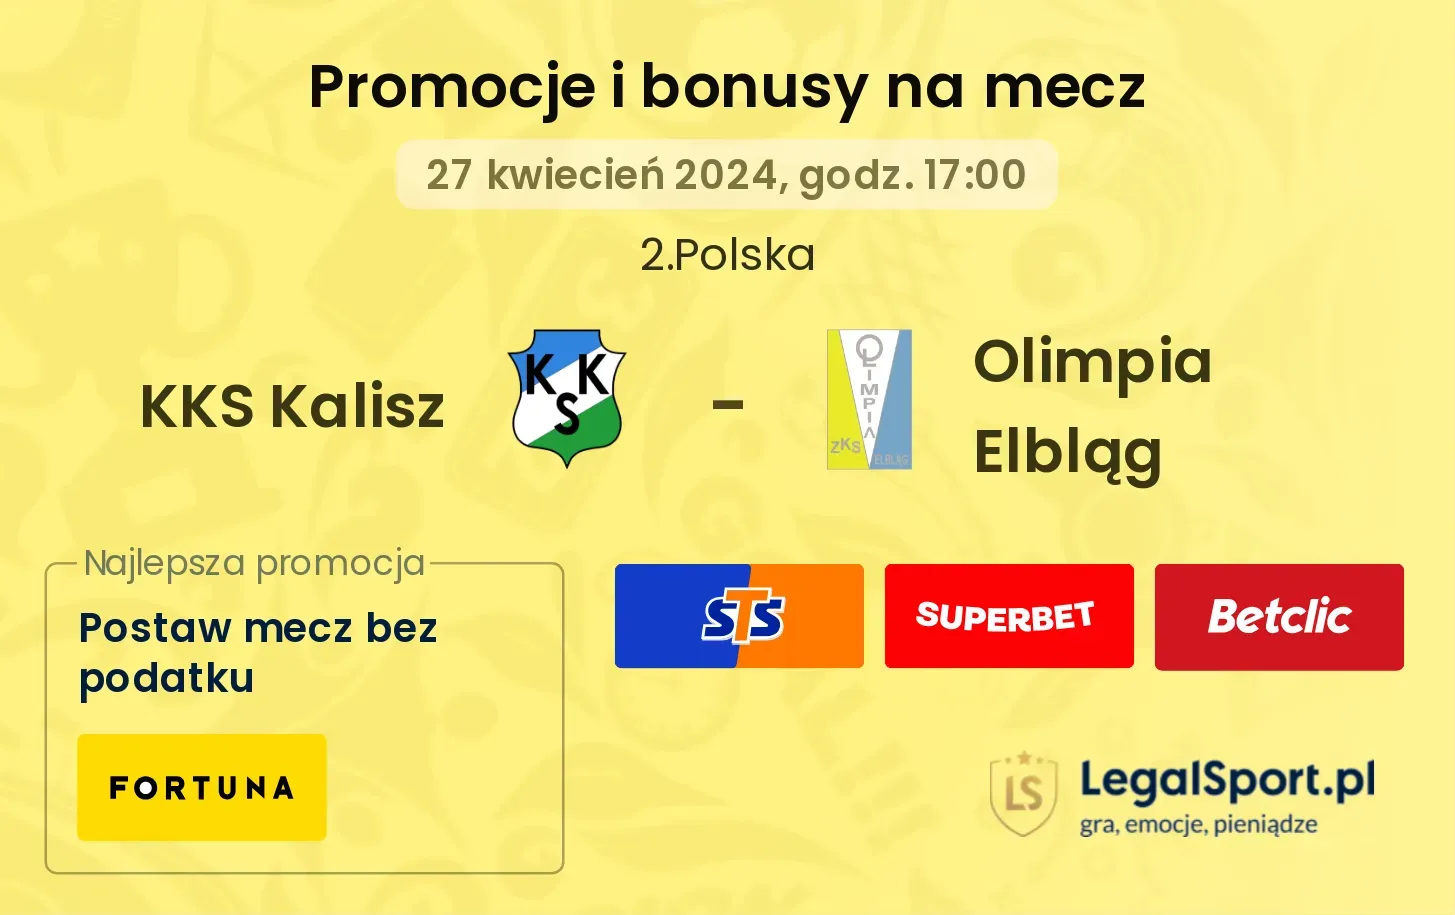 KKS Kalisz - Olimpia Elbląg promocje bonusy na mecz